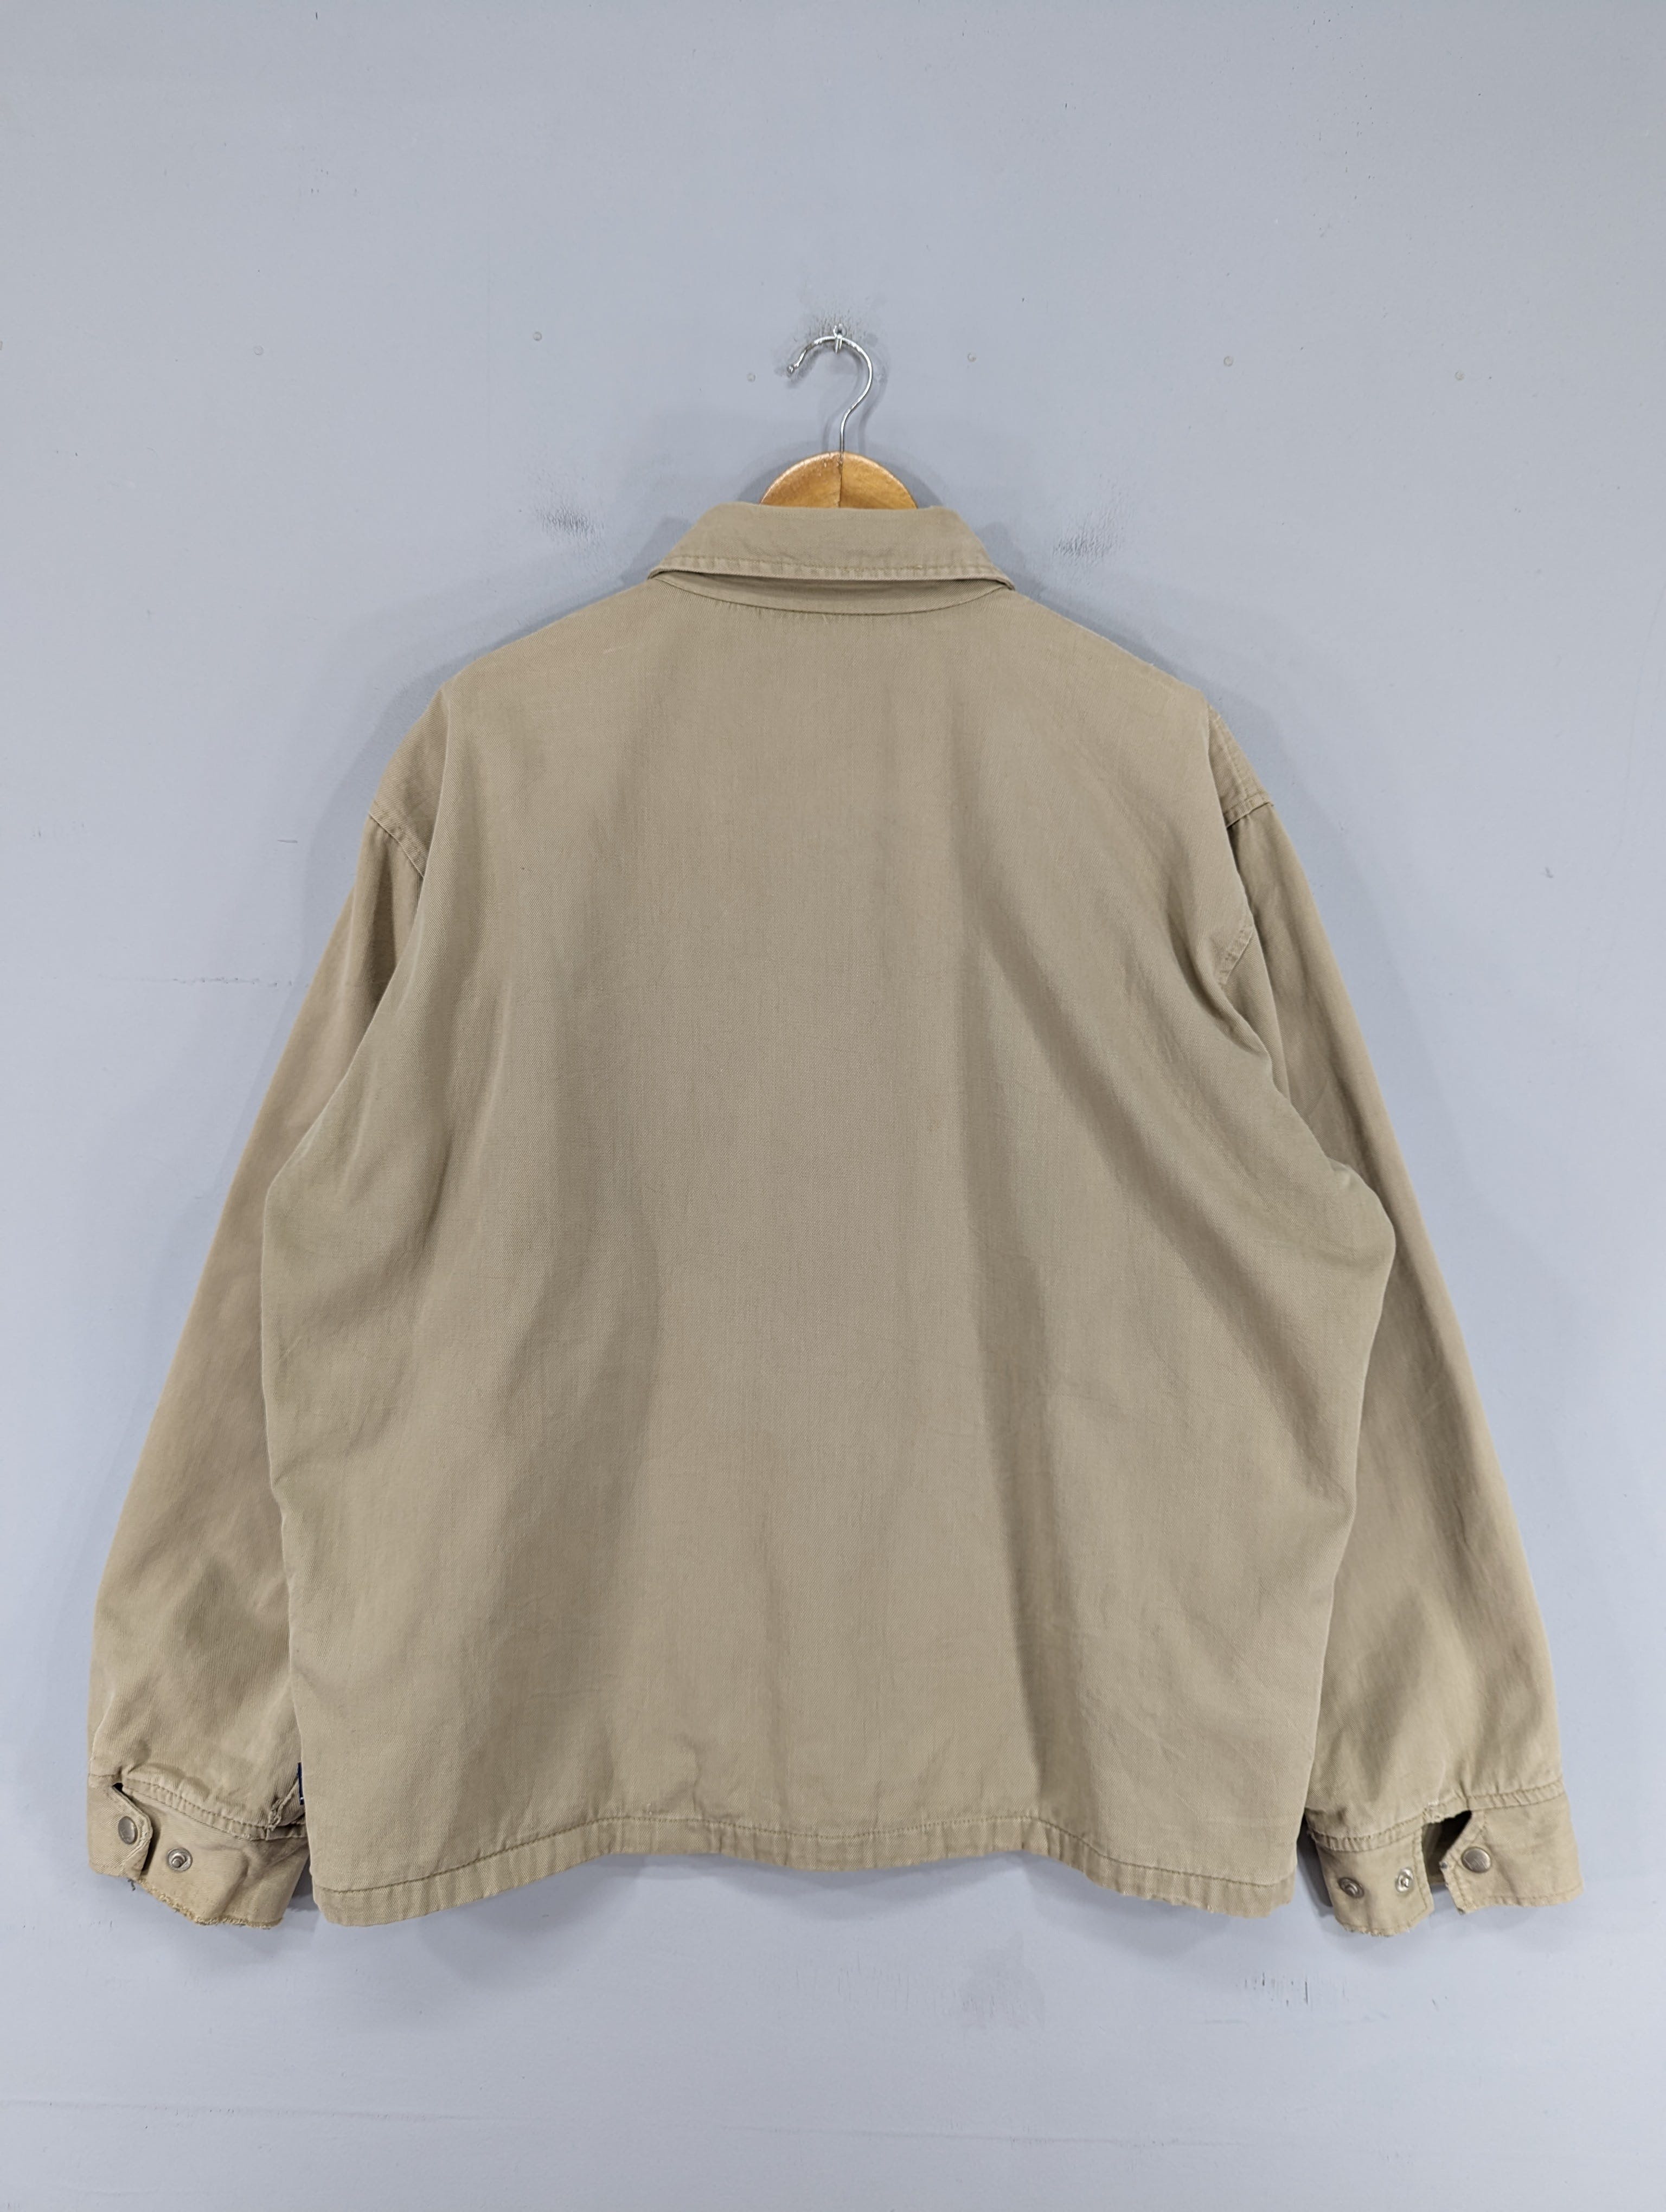 💥RARE💥Vintage 90s Stussy Distressed Workwear Jacket